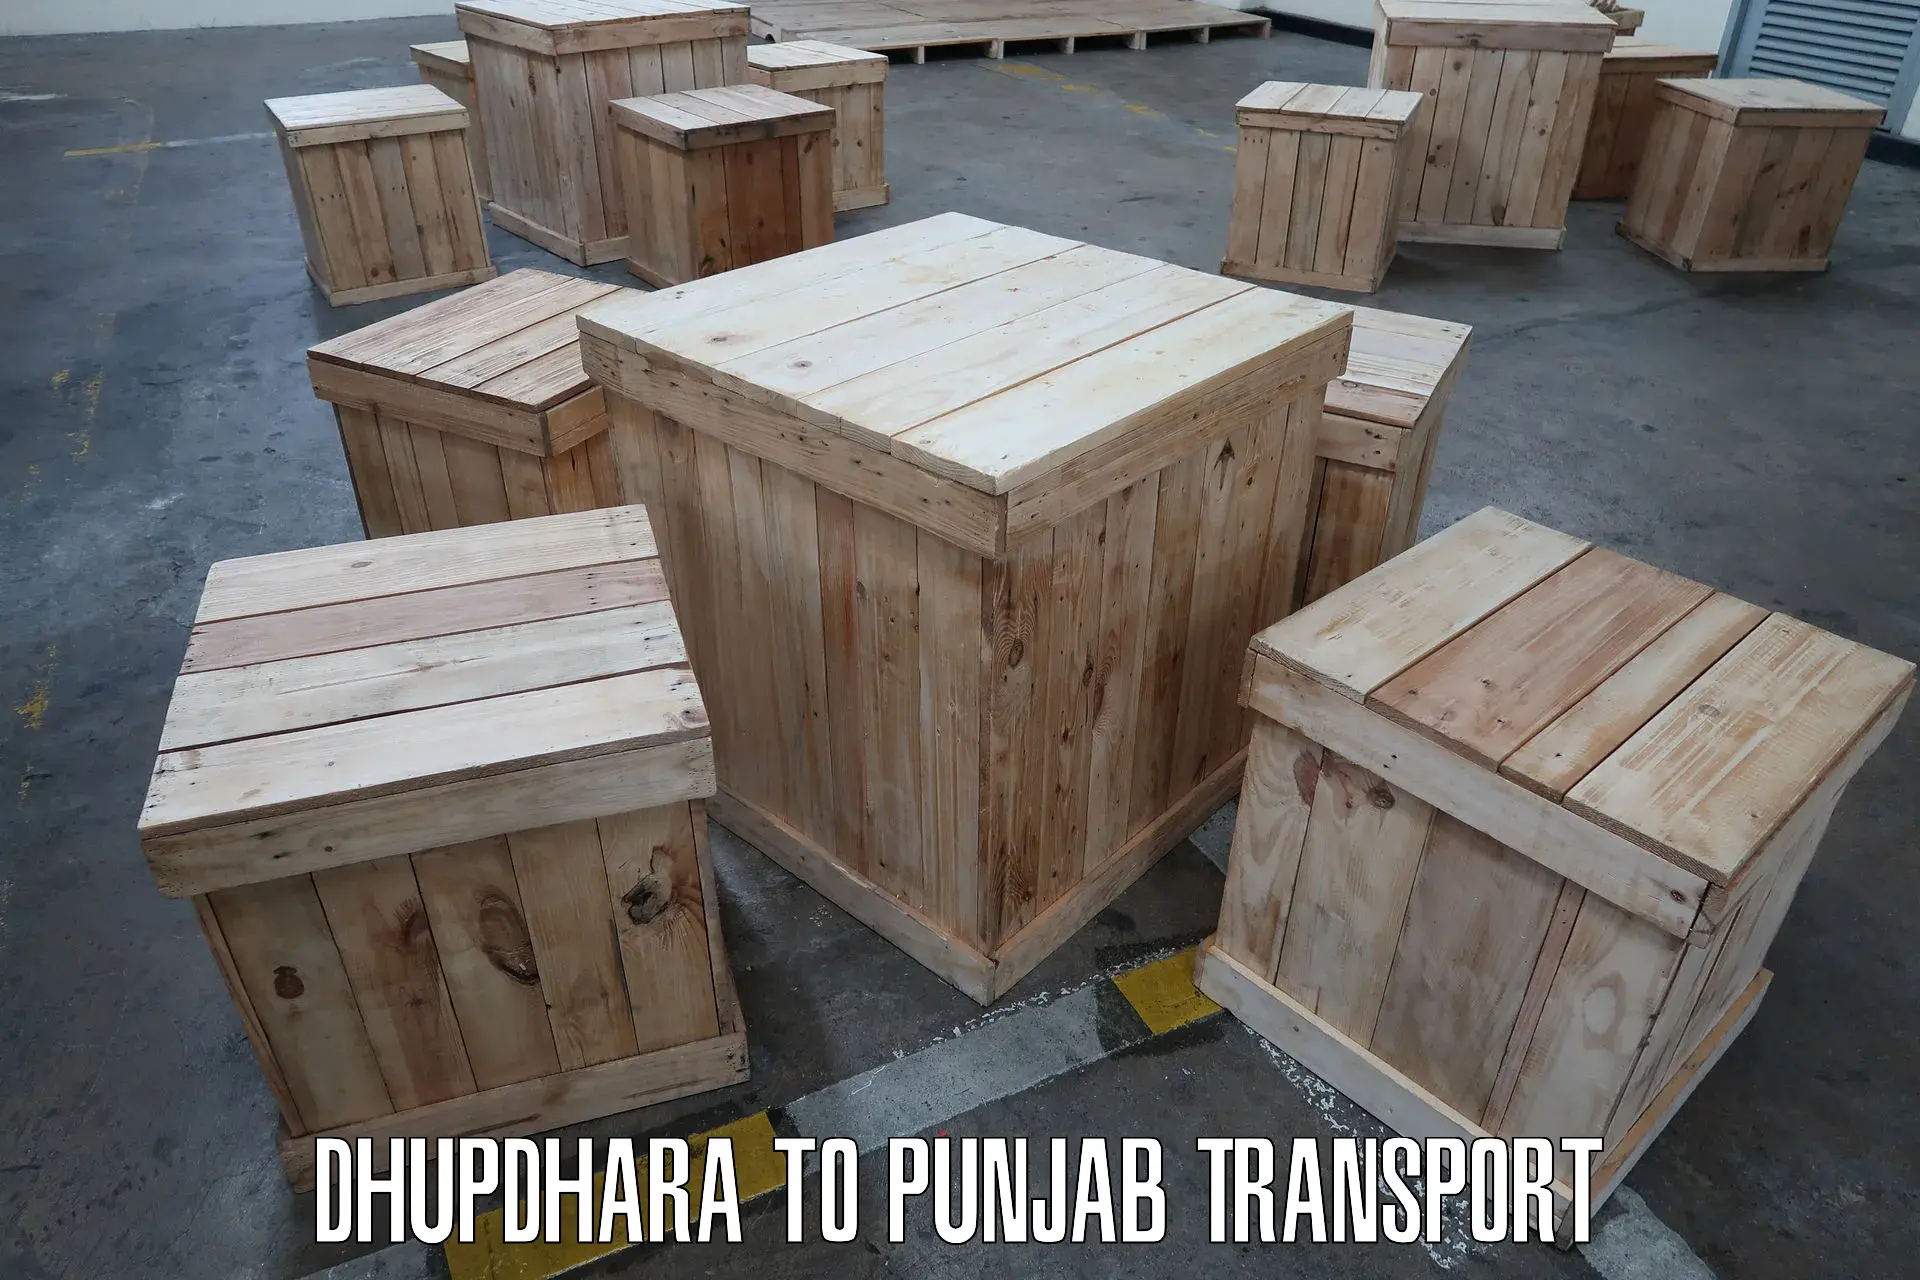 Furniture transport service Dhupdhara to Jhunir